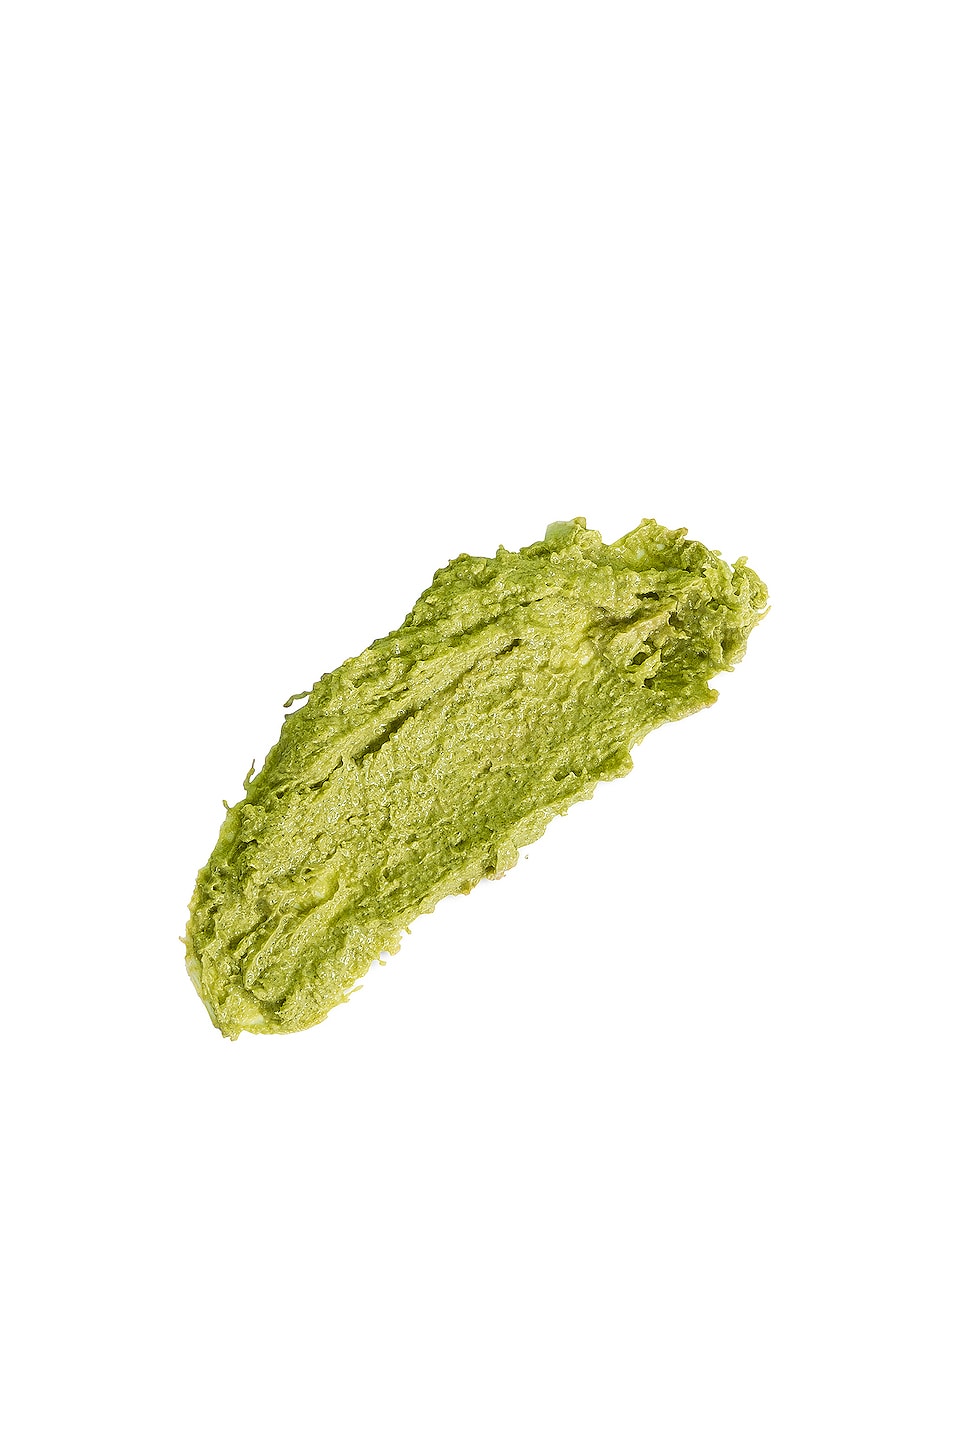 Shop Teami Blends Green Tea Face Scrub In N,a